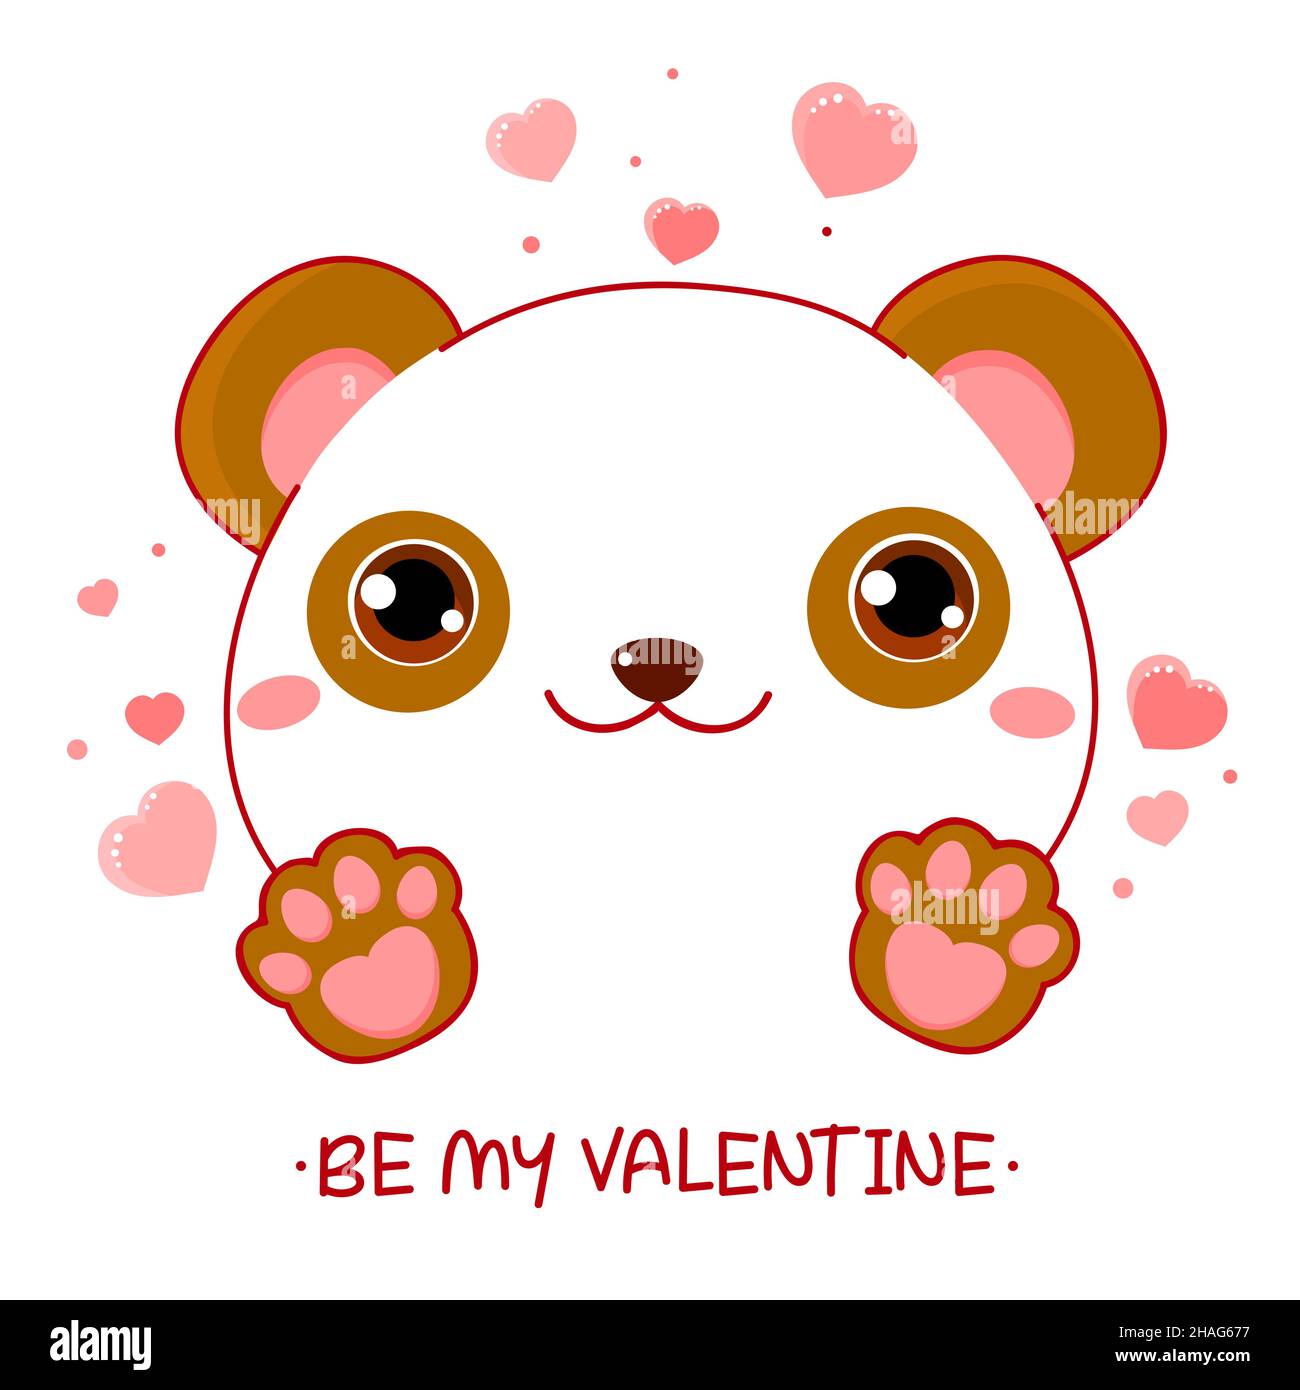 Jolie carte de Saint-Valentin style kawaii.Charmant petit panda avec des coeurs roses.Inscription soyez ma Saint-Valentin.Peut être utilisé pour l'impression de t-shirt, les autocollants, l'accueil Illustration de Vecteur